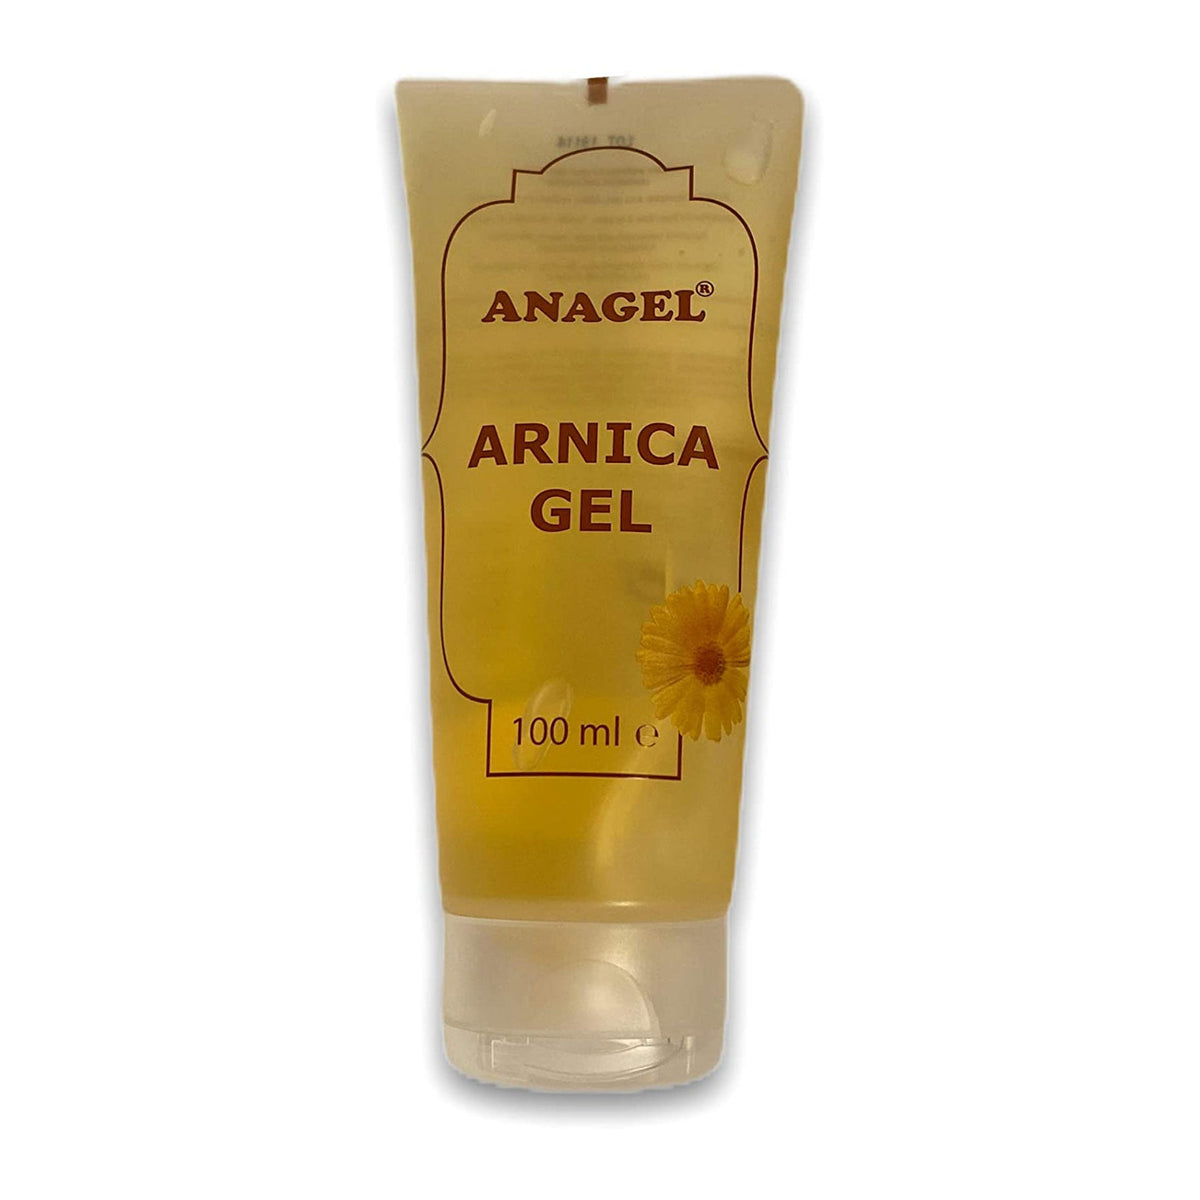 Arnica Gel 100ml - ANAGEL